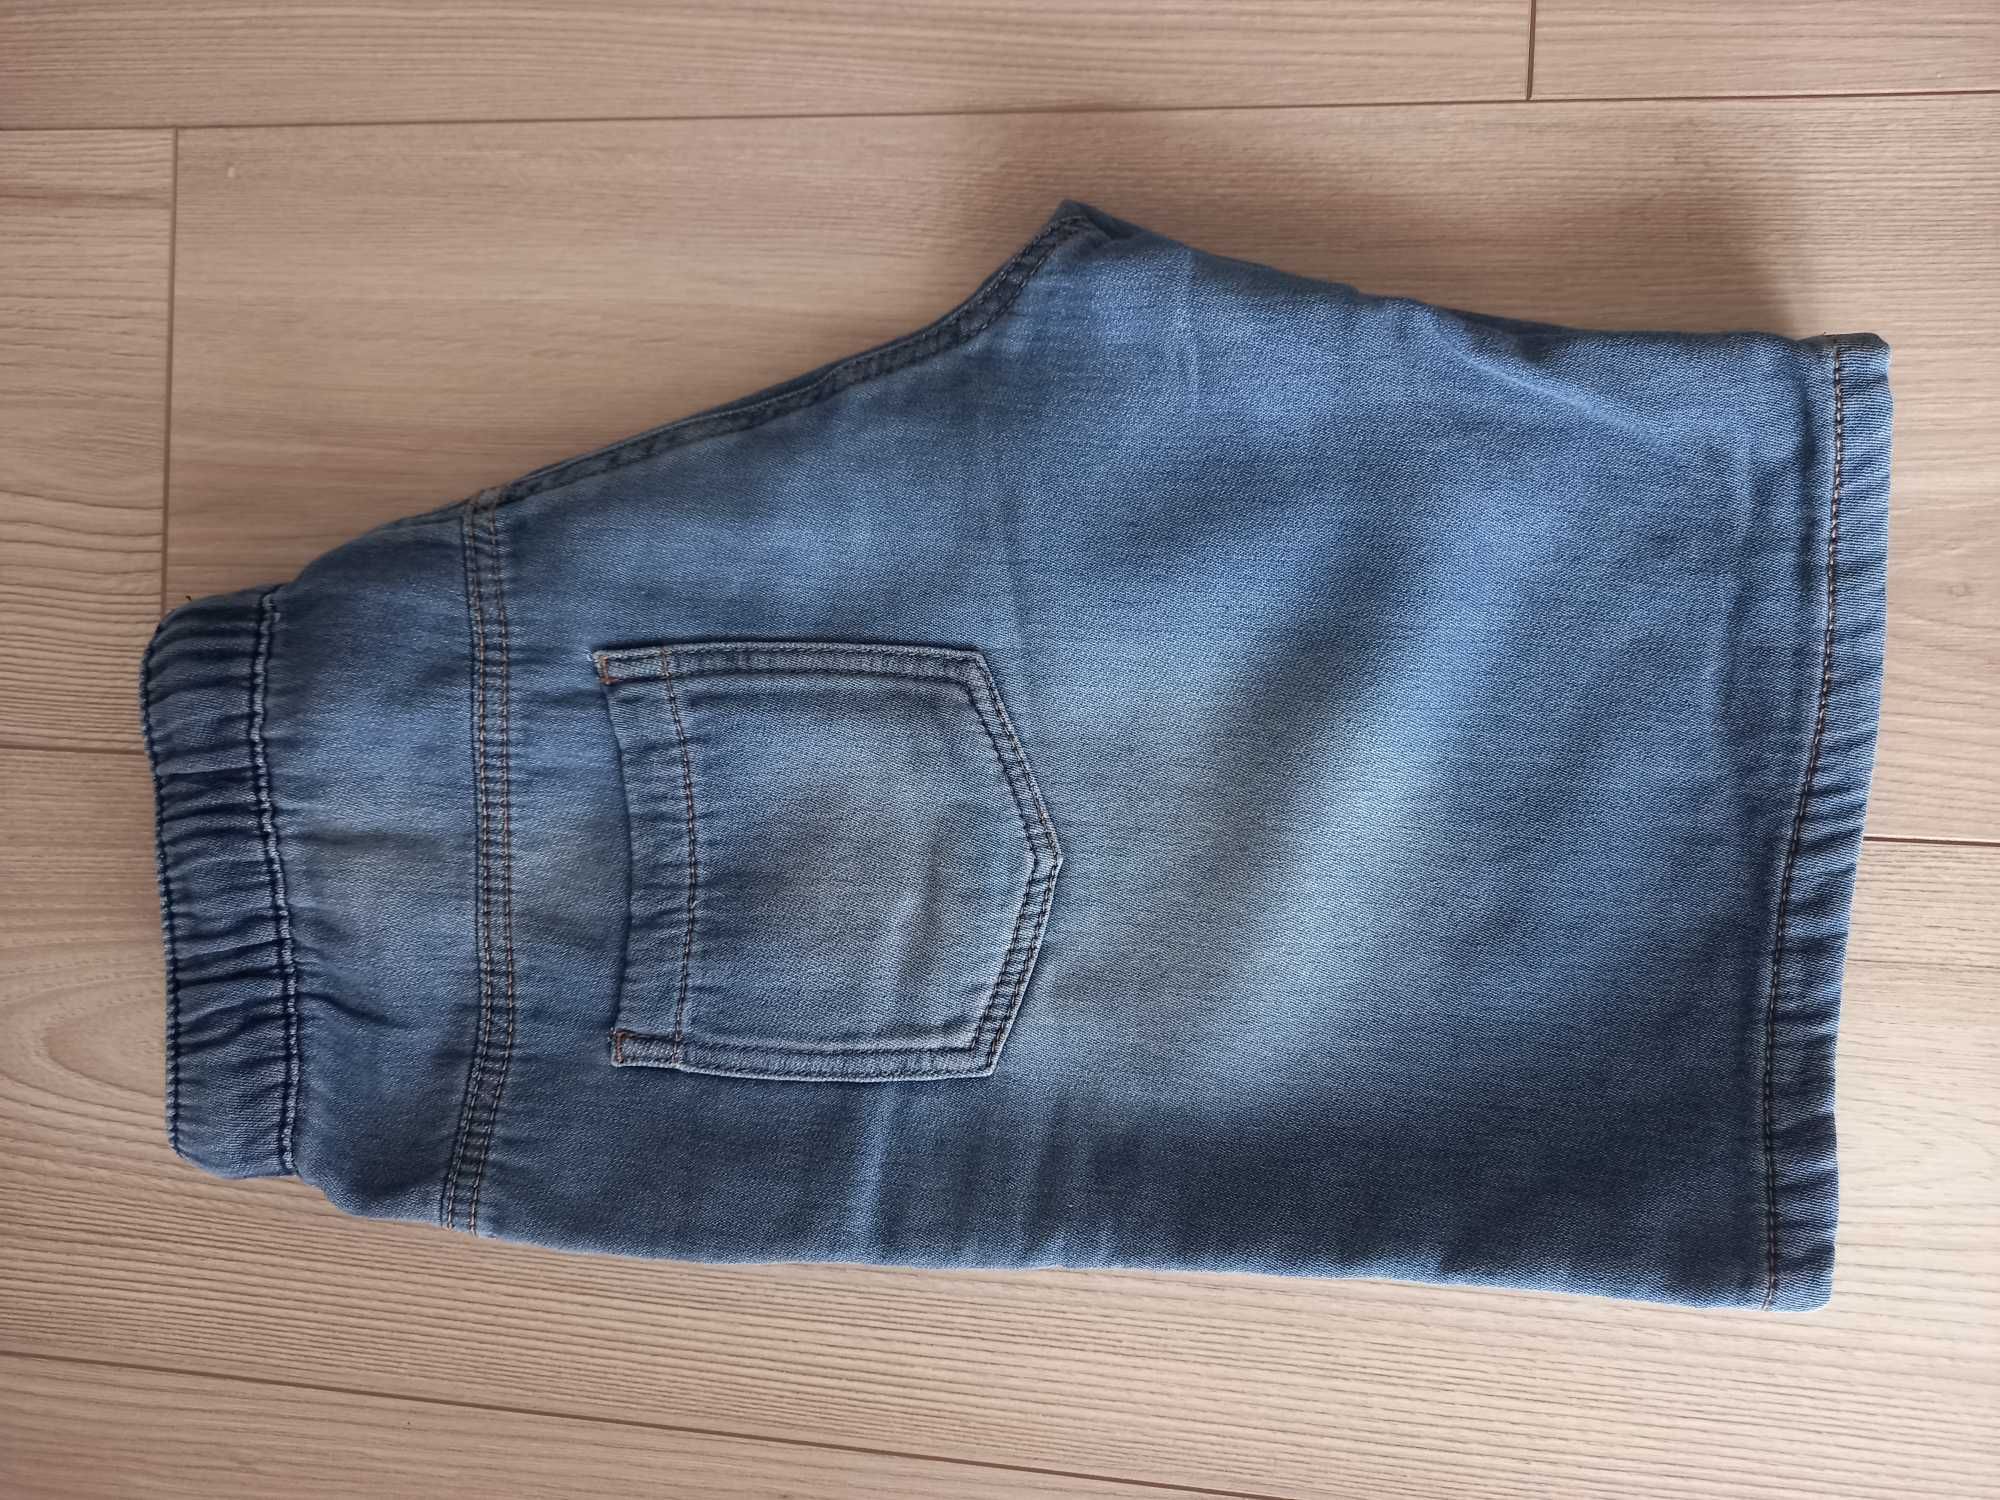 Spodenki krótkie chłopięce jeansy, rozmiar 152 cm.